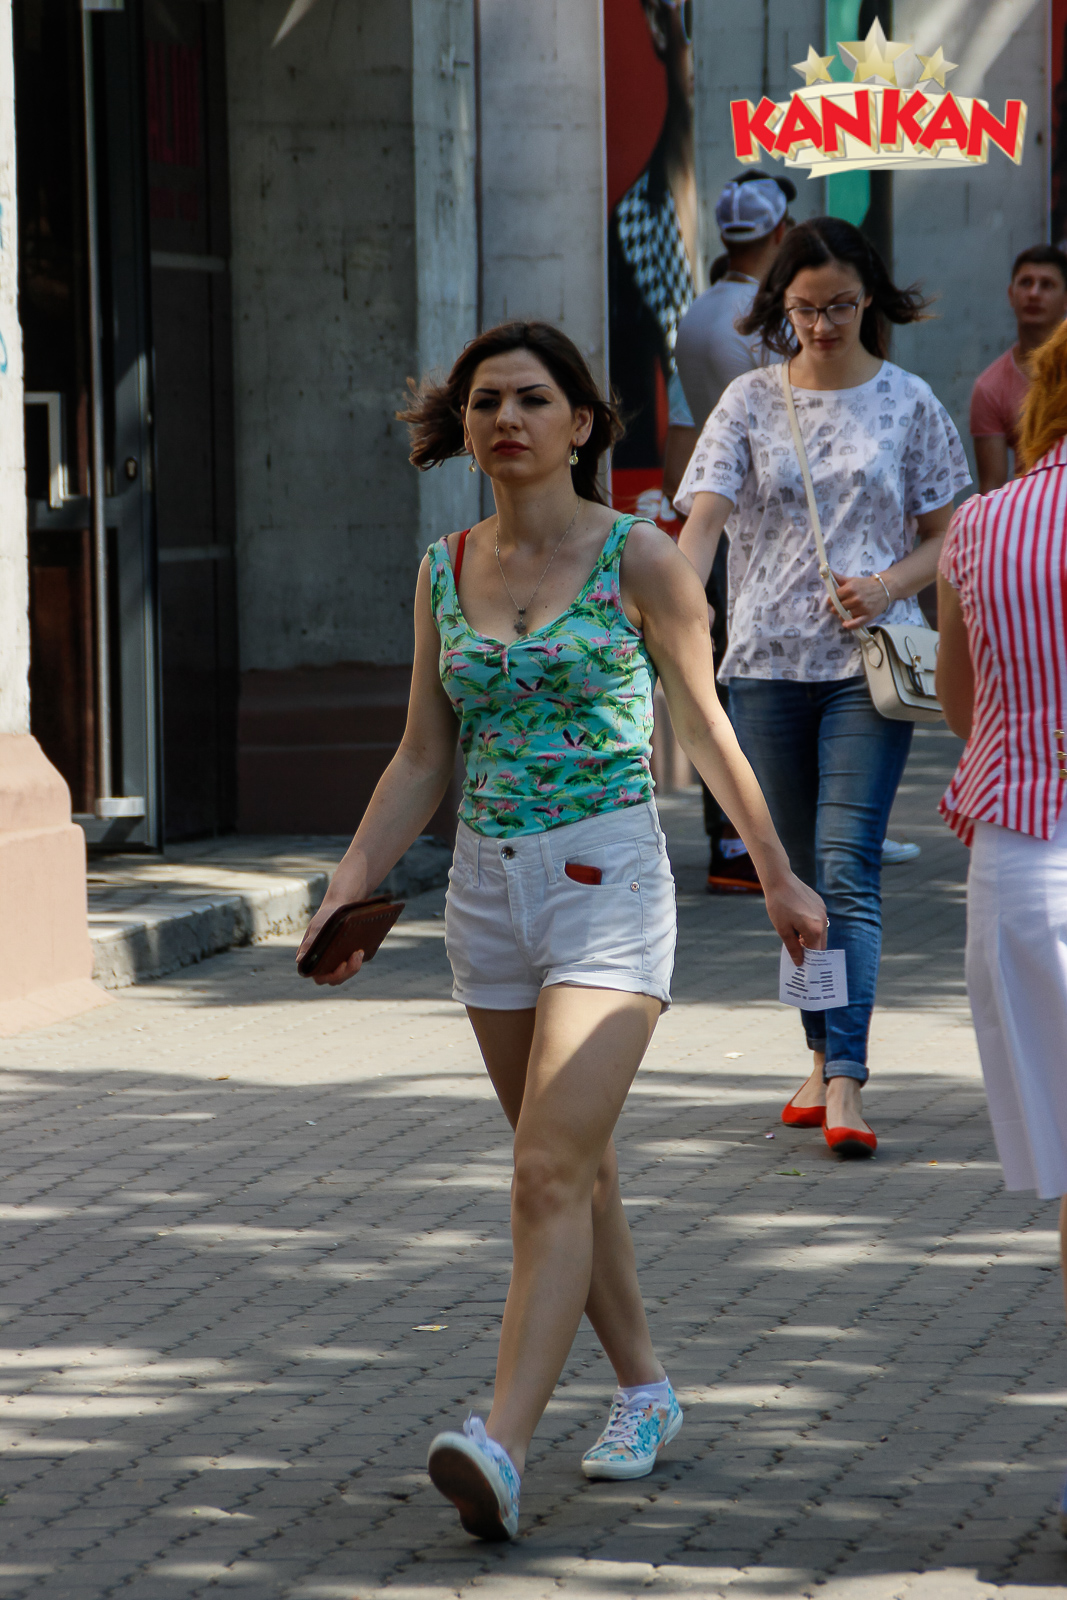 Sezonul cald dezgolește fetele din Chișinău. O galerie foto realizată la 30°C